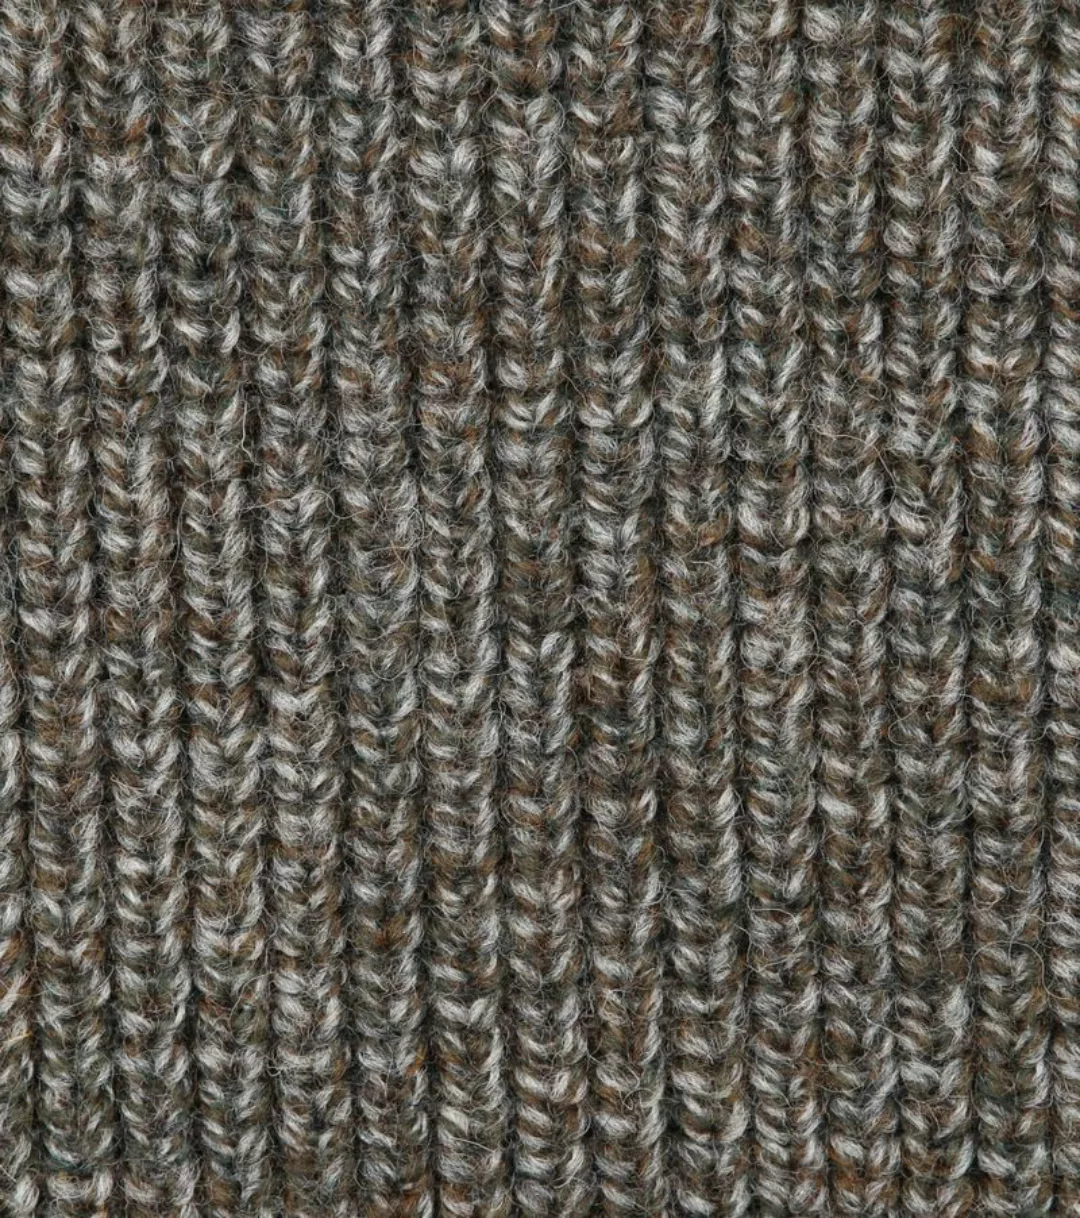 Barbour NewTyne Zip Pullover Wool Dunkelgrün - Größe XL günstig online kaufen